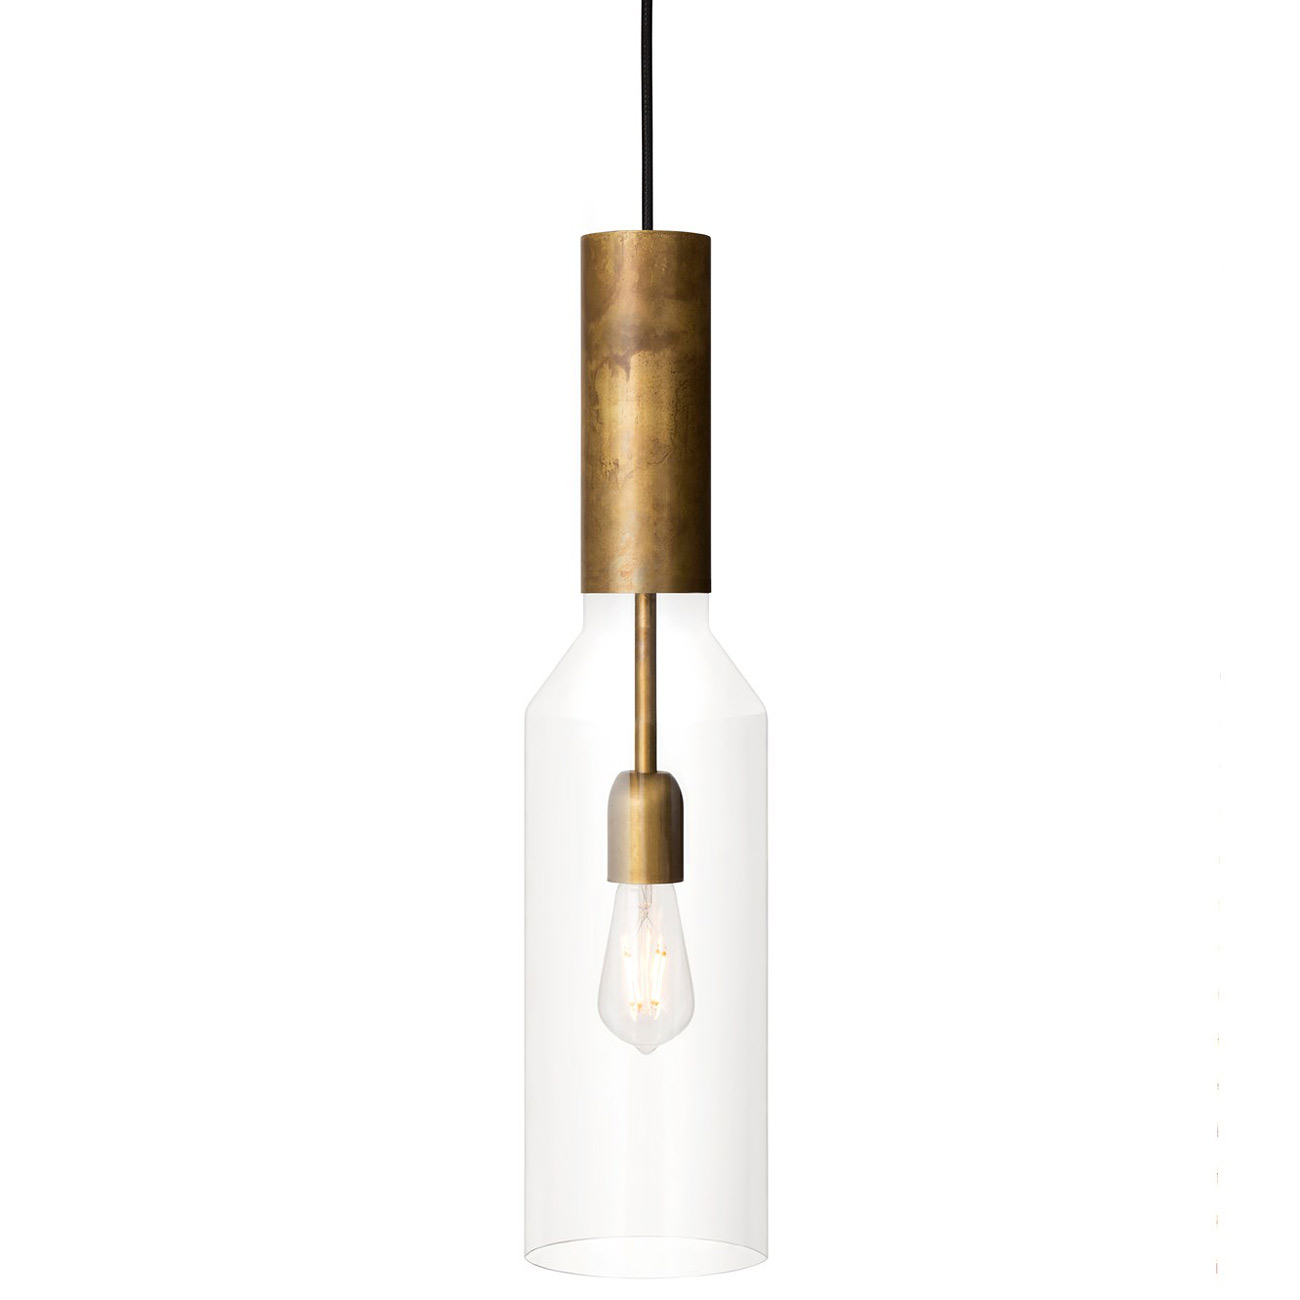 Design-Pendelleuchte aus Messing mit schmalem Glaskolben PHENO: Schwedische Design-Pendelleuchte in „Messing roh“ mit klarem Glas-Kolben, darin eine „Edison“-Glühlampe